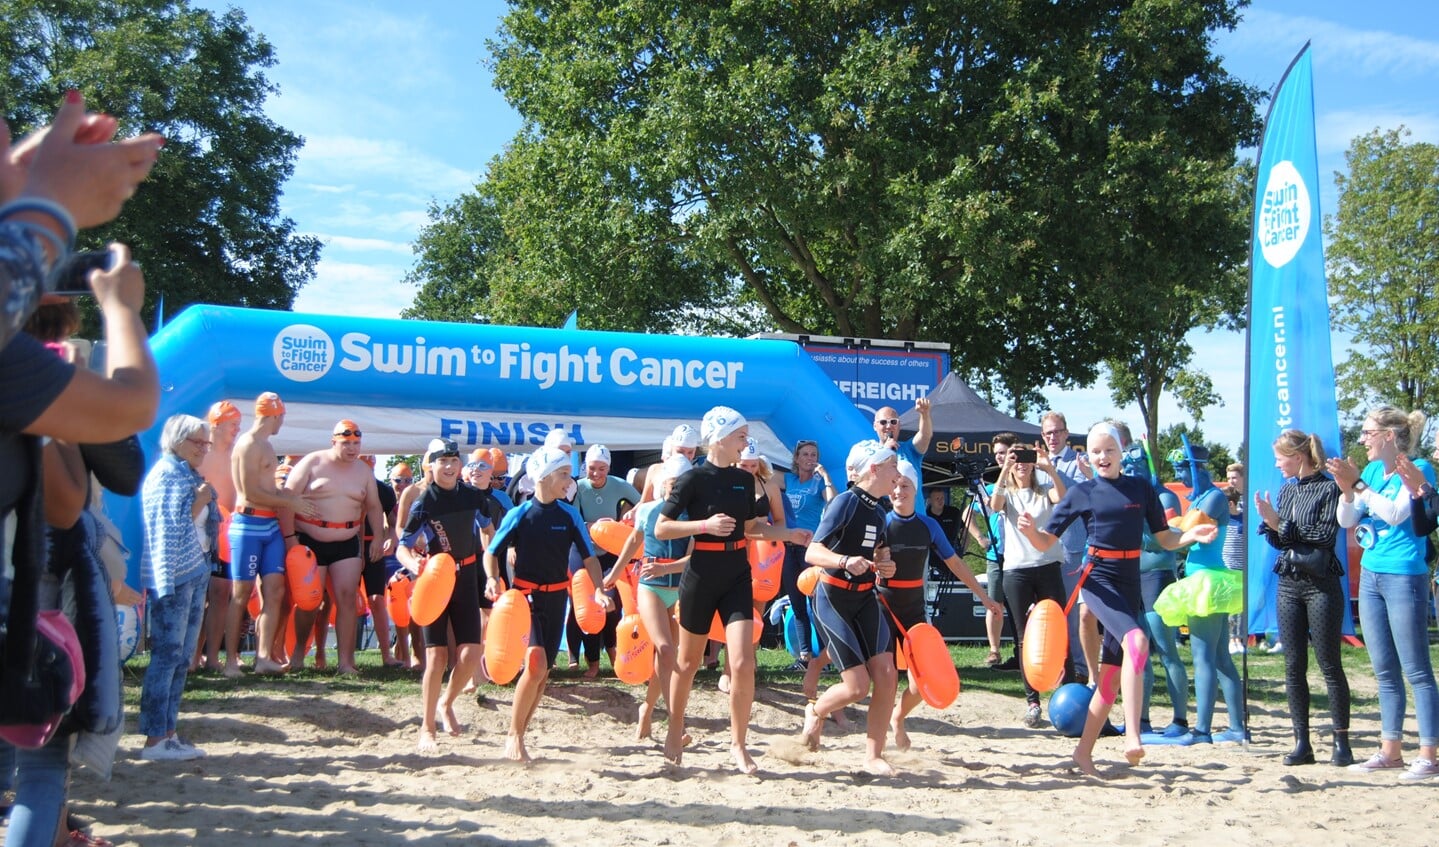 De jeugd beet het spits af; 500 mater zwemmen in Stroombroek voor onderzoek naar kanker. Foto: Stad Doetinchem.nl